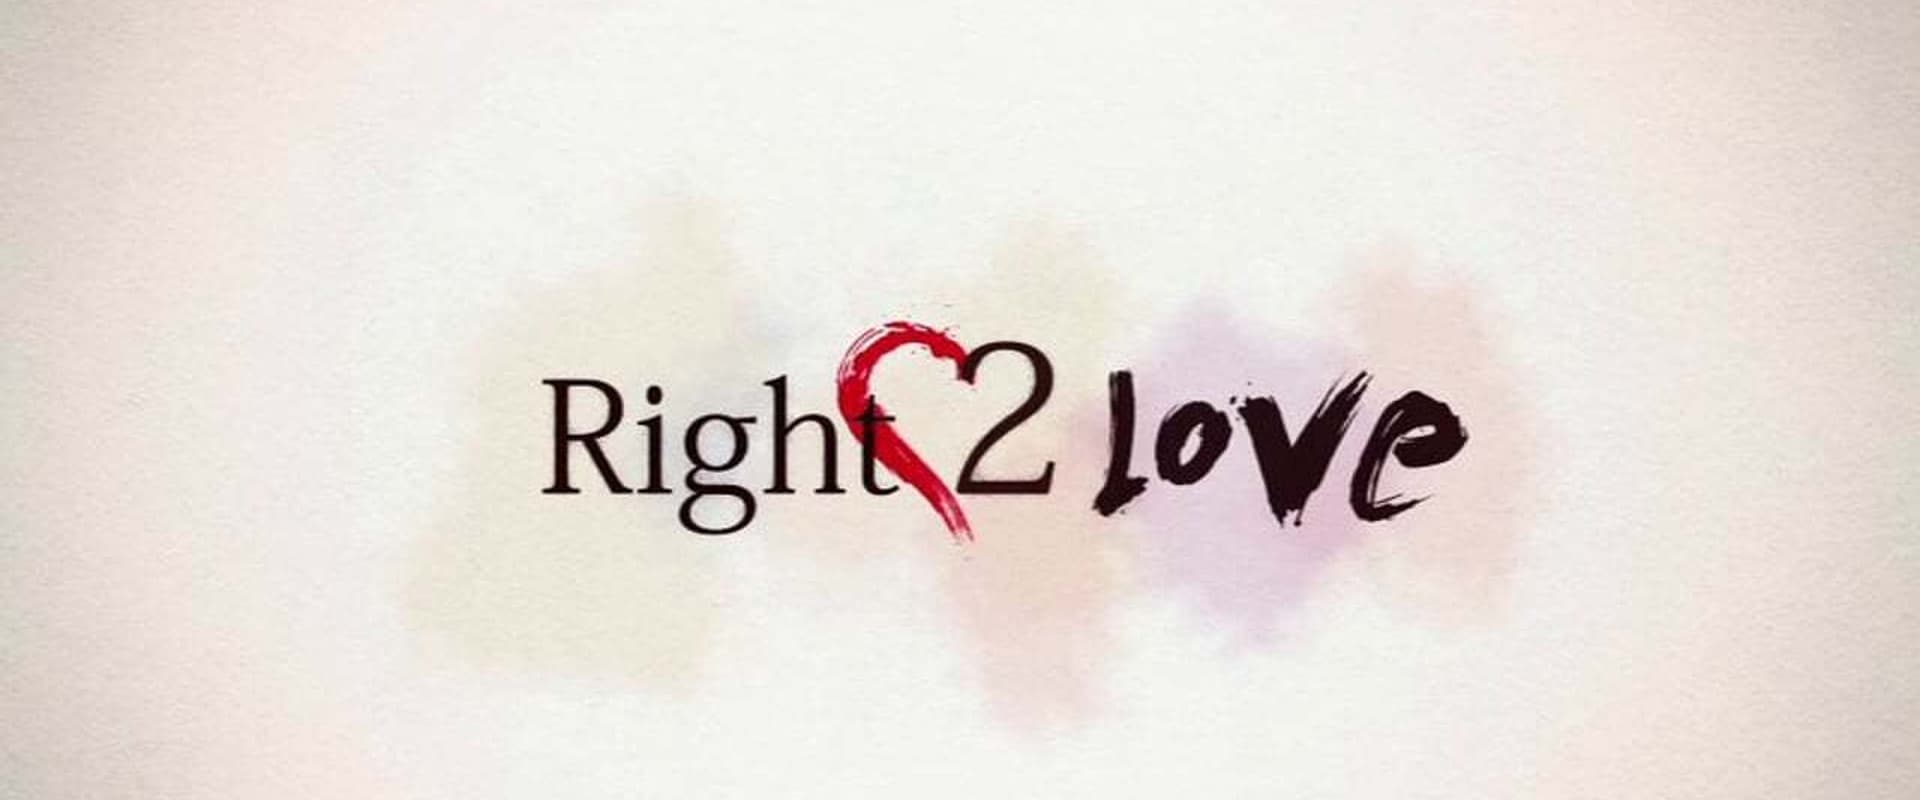 Right2Love